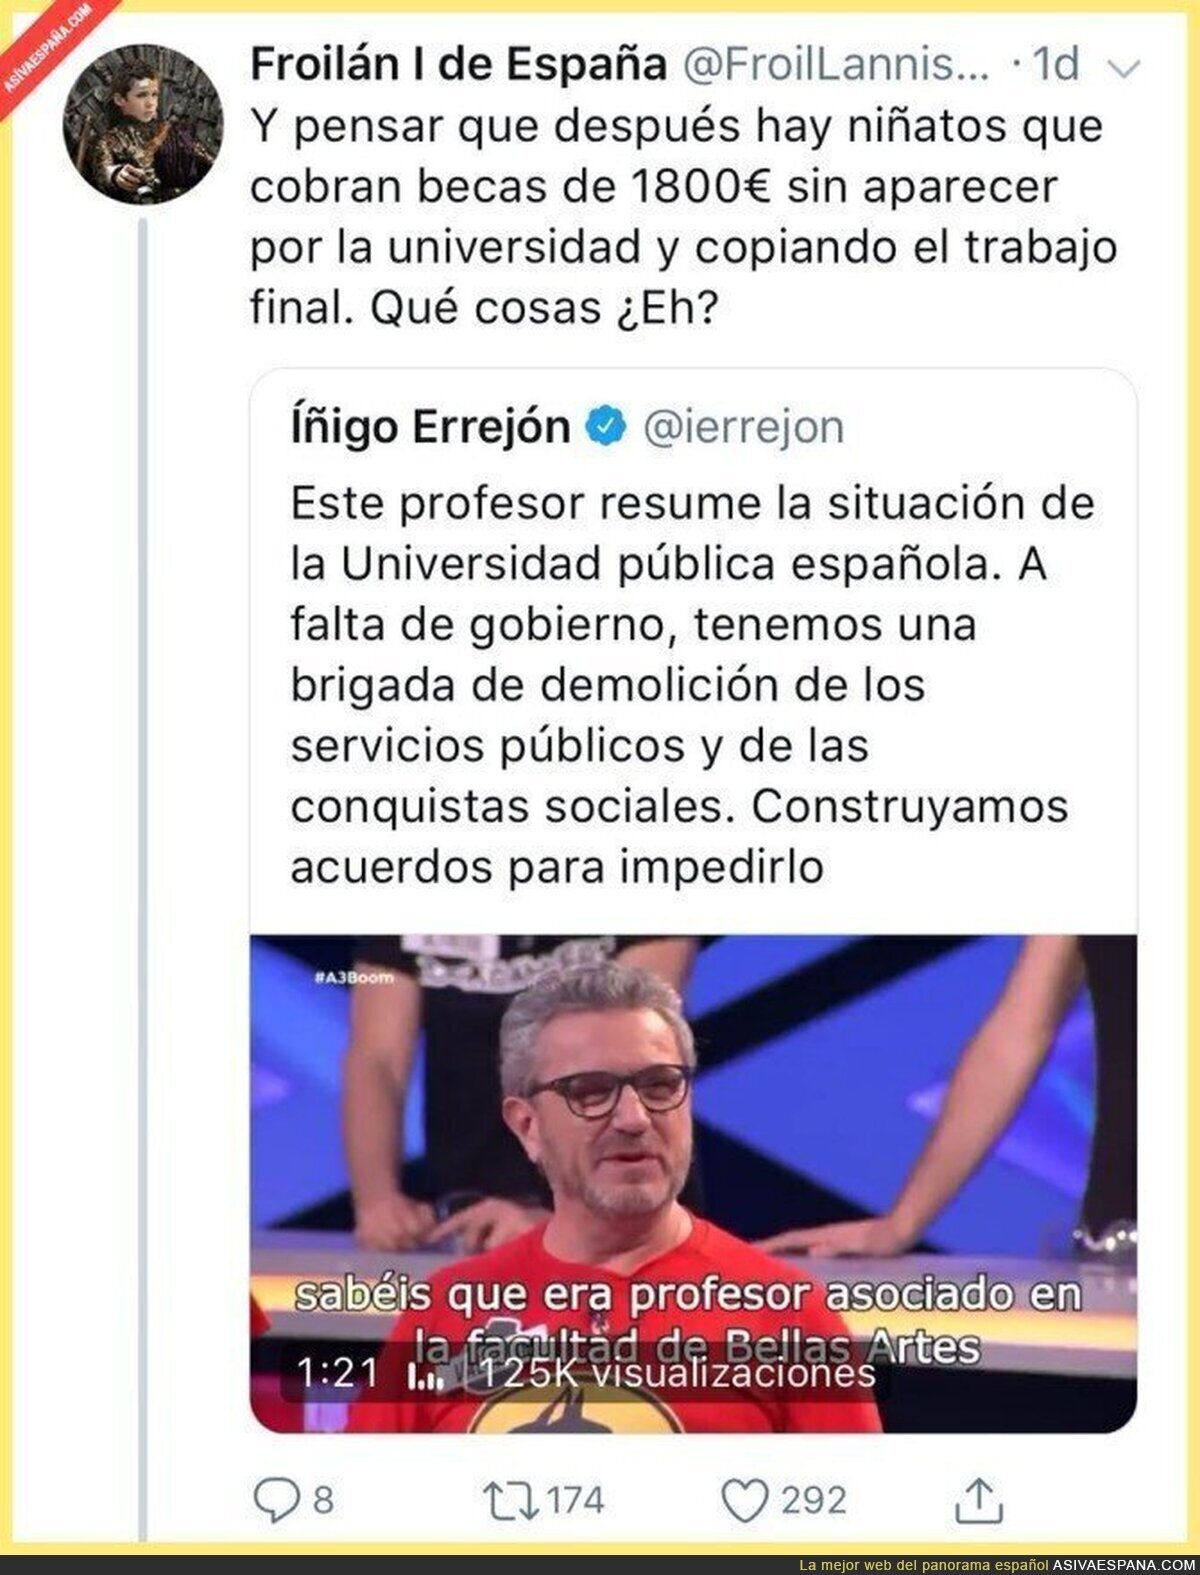 Íñigo Errejón comenta lo del profesor universitario que dejó el trabajo por poco salario y no tardan en recordarle algo